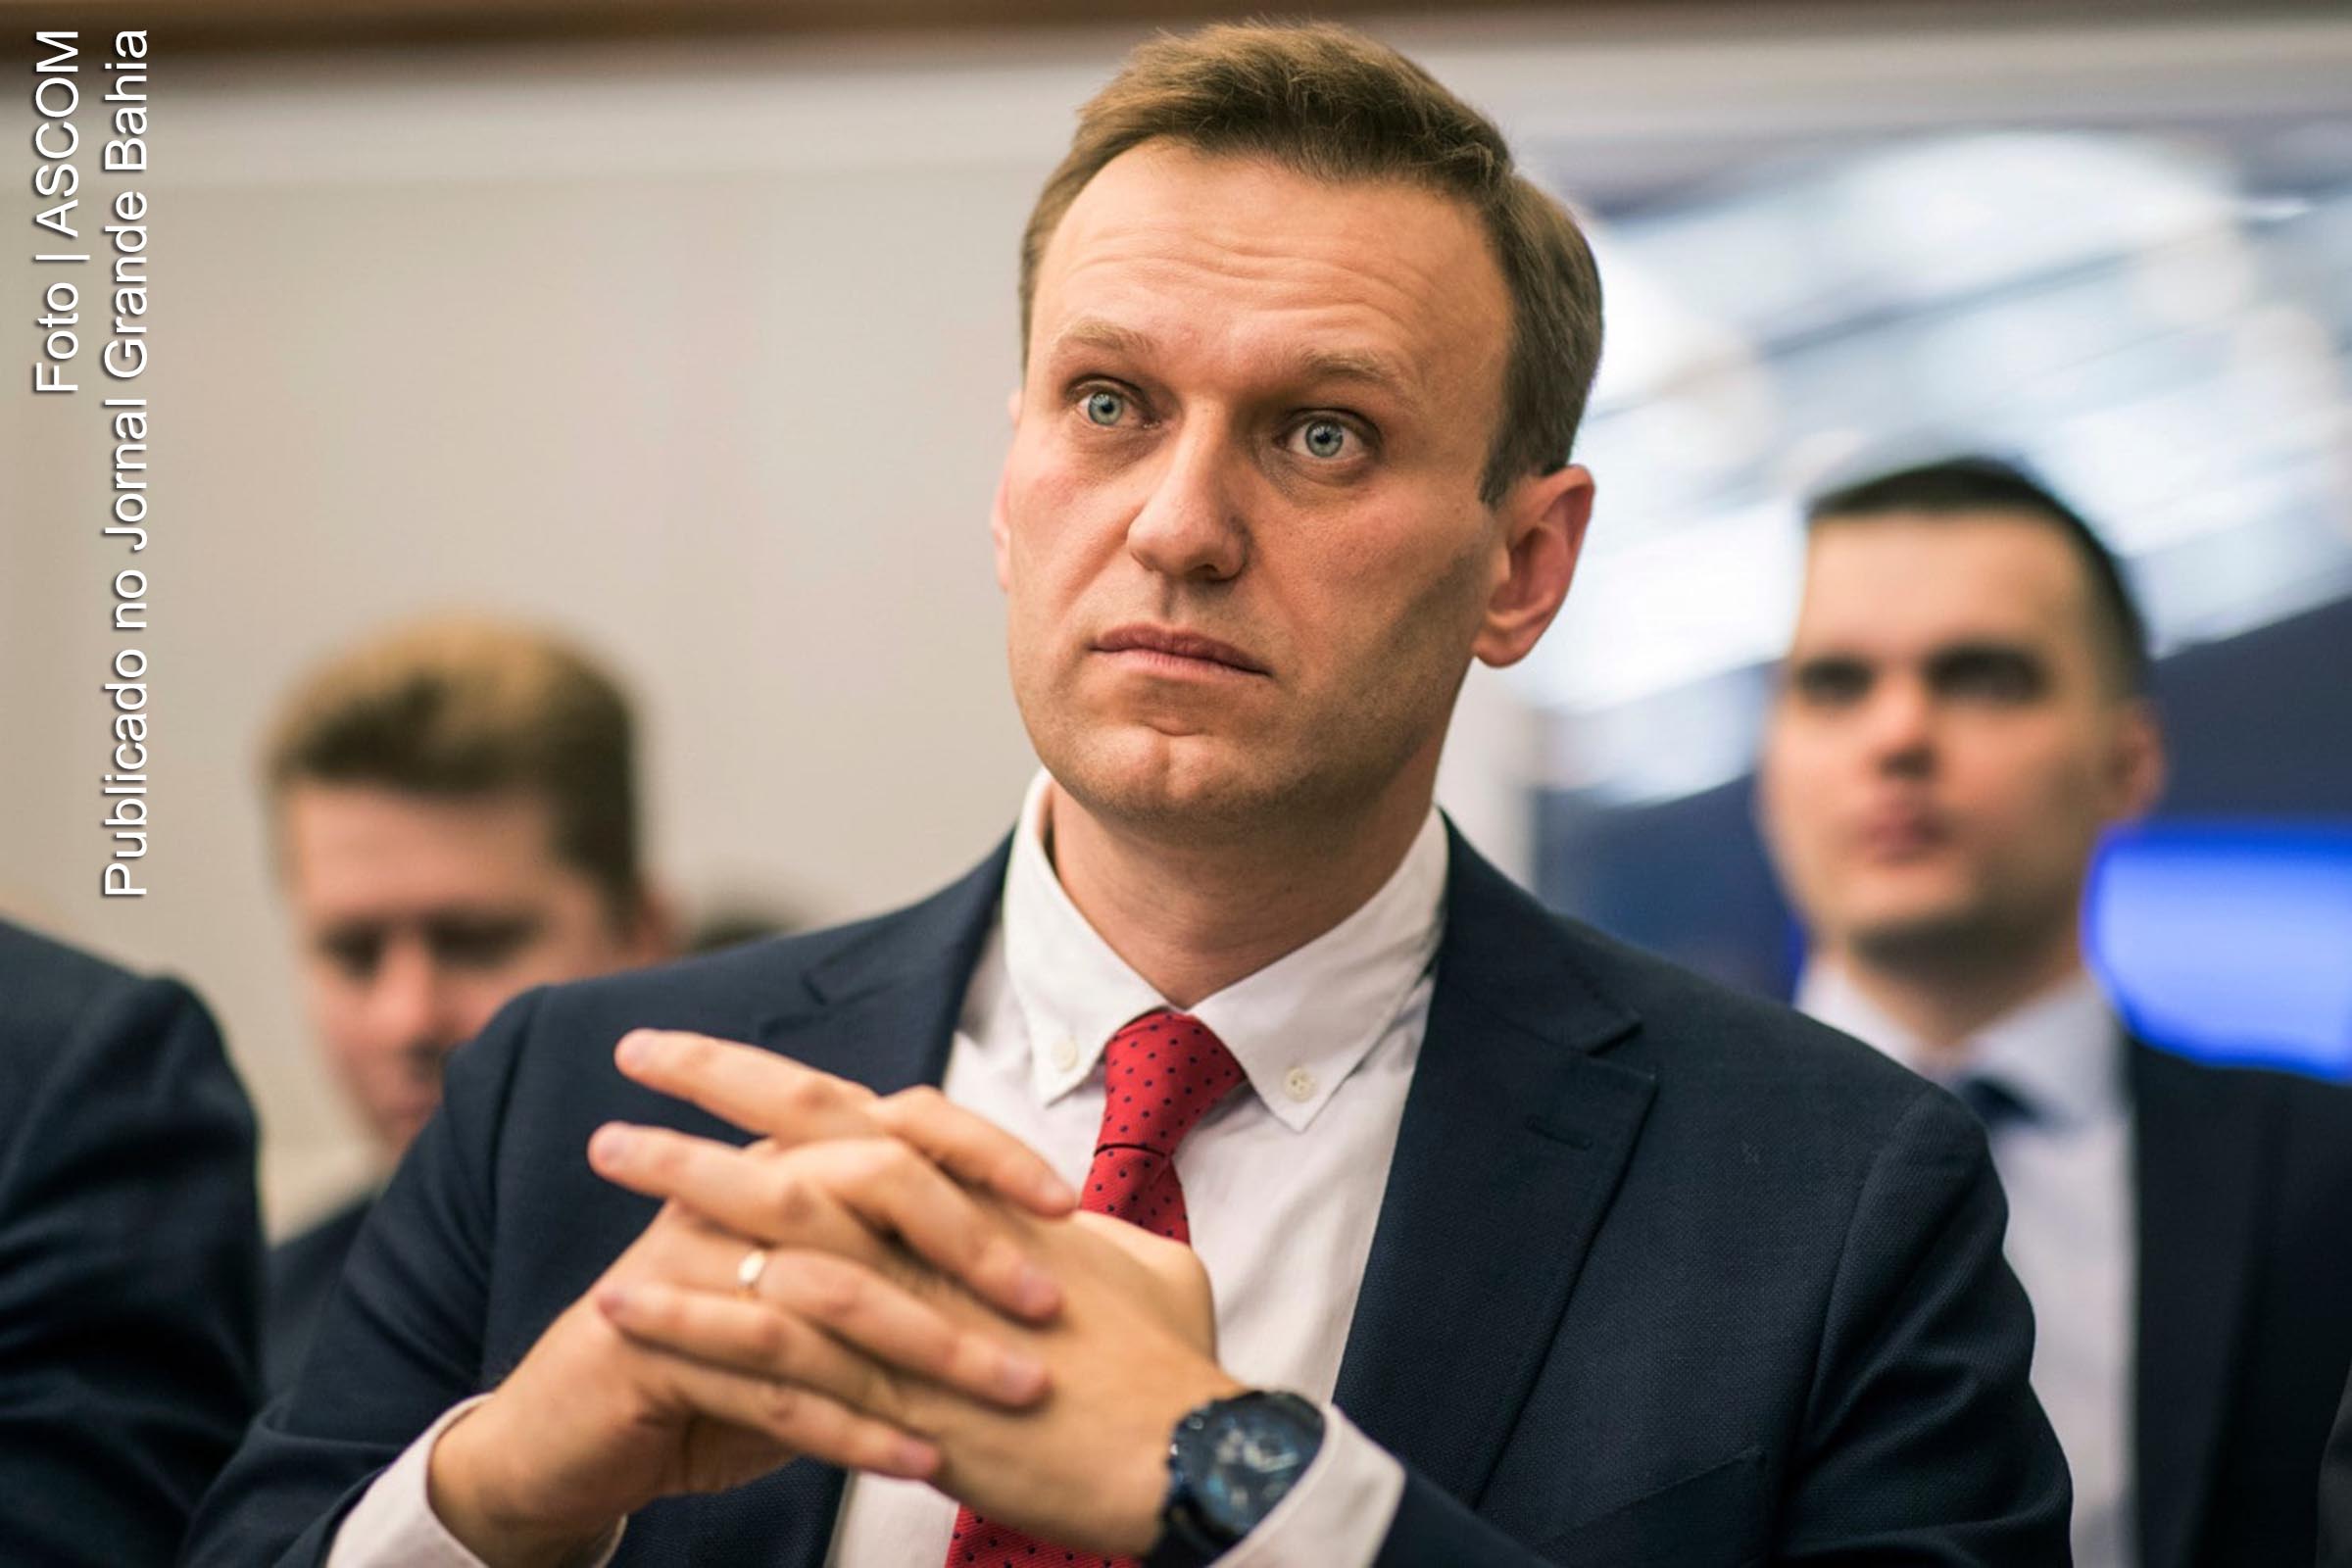 Alexei Anatolievich Navalny é um advogado, ativista político e financeiro, blogueiro e político da Rússia. A partir de 2009, Navalny se tornou um dos principais oposicionistas ao presidente Vladimir Putin.